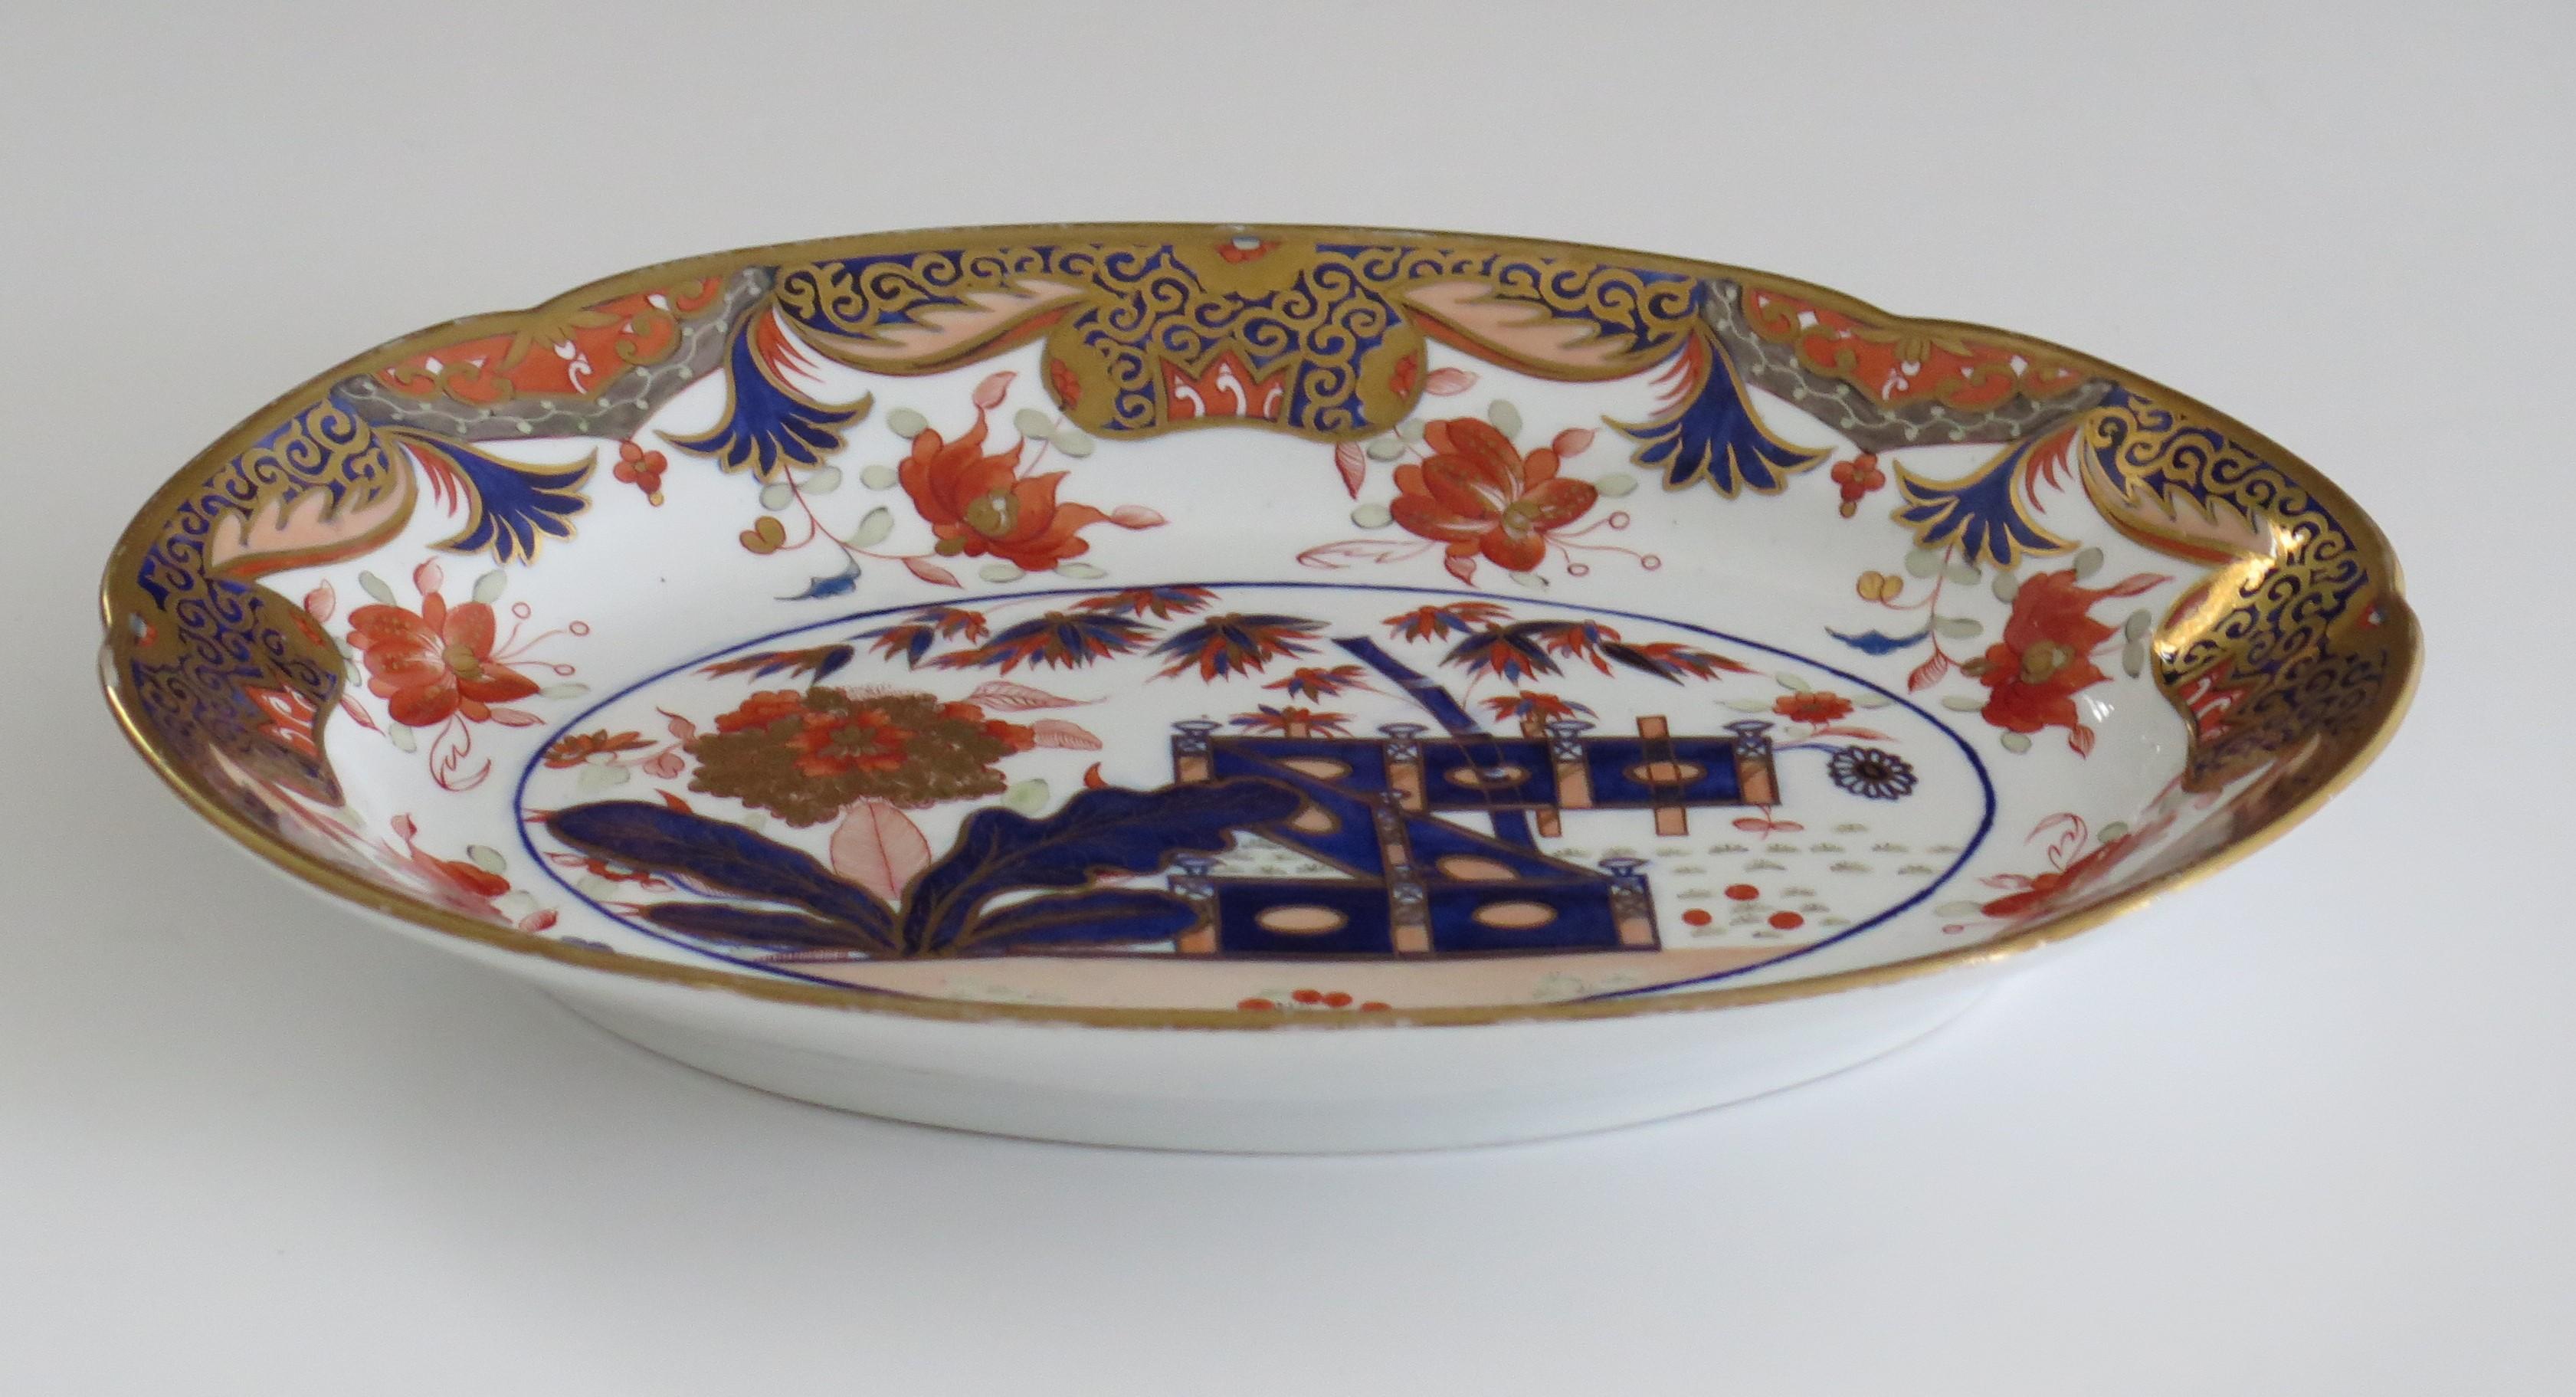 Il s'agit d'un bel exemple de plat de service en porcelaine d'époque George III, fabriqué par Spode et peint à la main selon le motif 967, au début du XIXe siècle, vers 1815.

Le plateau ou le plat est de forme ovale avec un bord cranté et repose